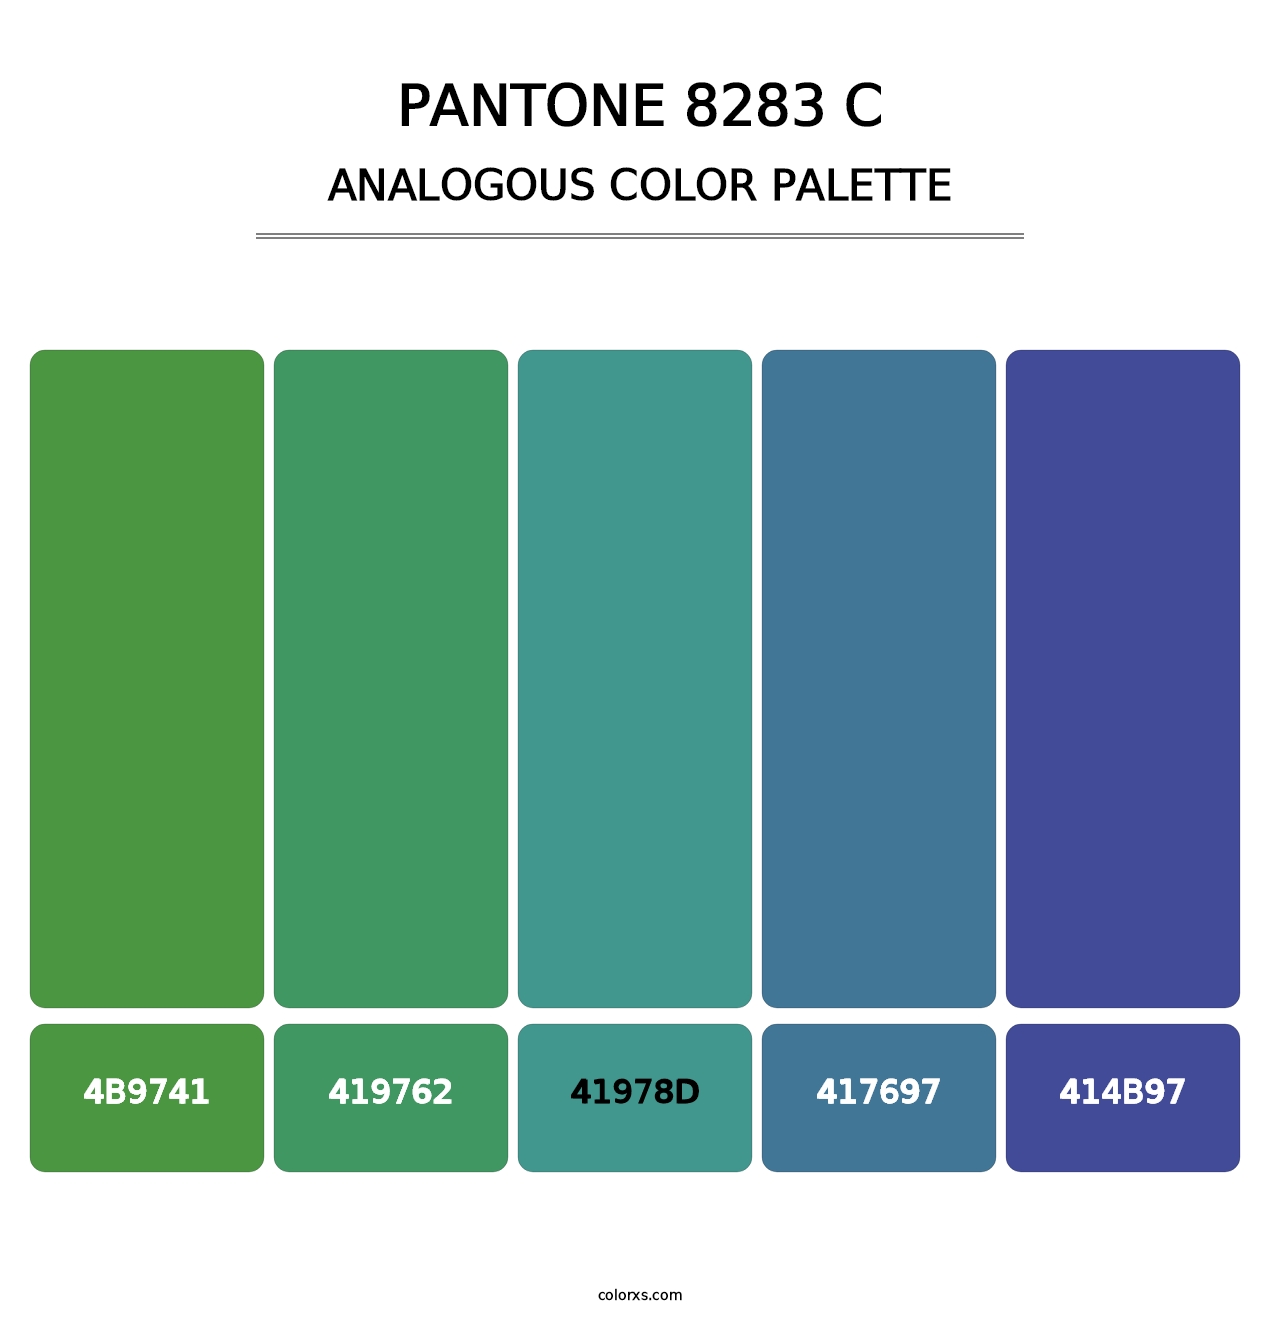 PANTONE 8283 C - Analogous Color Palette